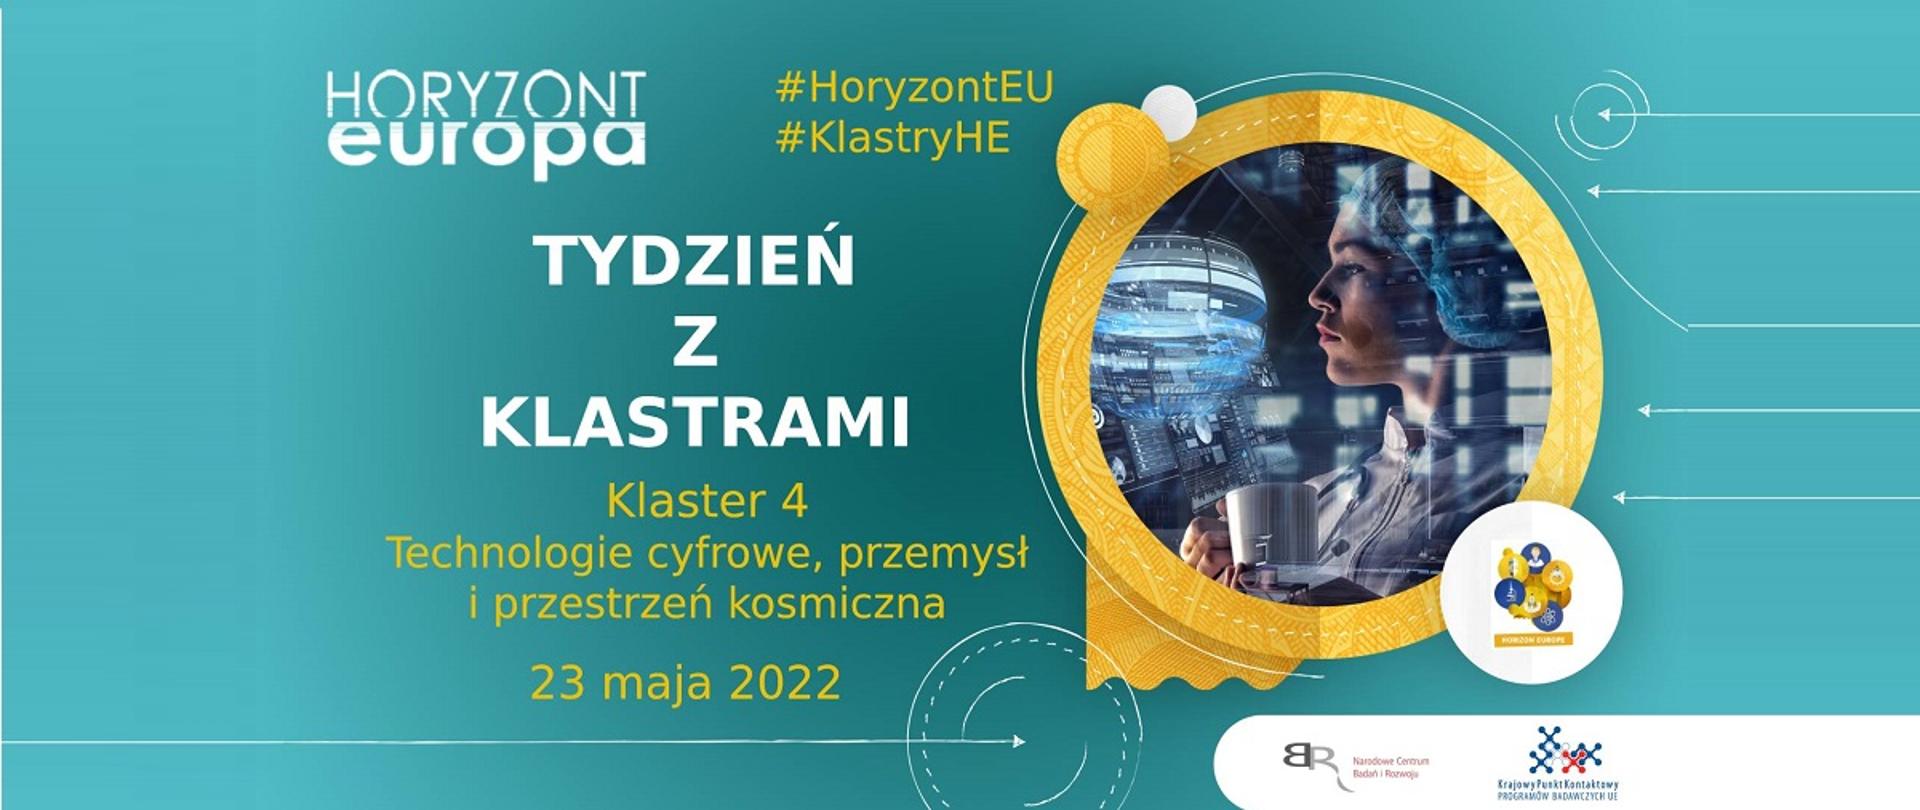 Horyzont Europa
#HoryzontEU
#KlastryHE
Tydzień z klastrami
Klaster 4
Technologie cyfrowe, przemysł i przestrzeń kosmiczna
23 maja 2022